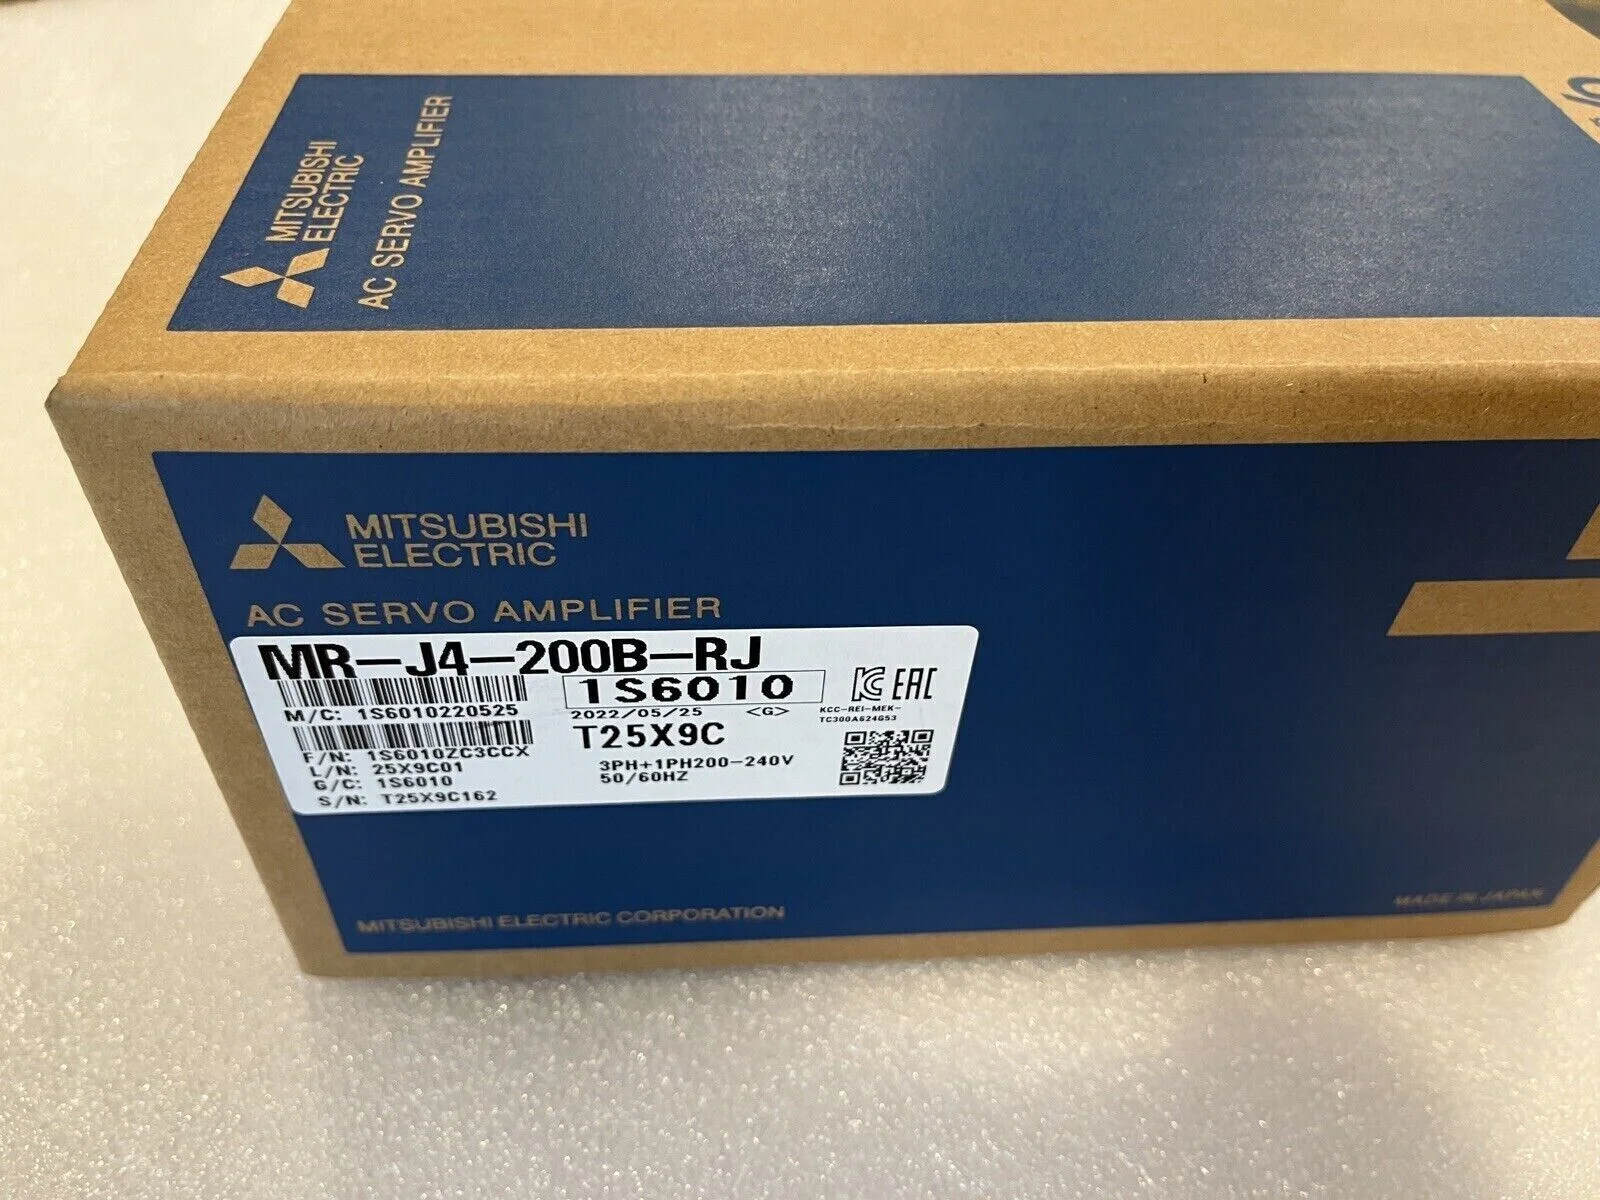 

MR-J4-200B-RJ Servo Amplifier New In Box Warranty 1 Year Fast Shipping